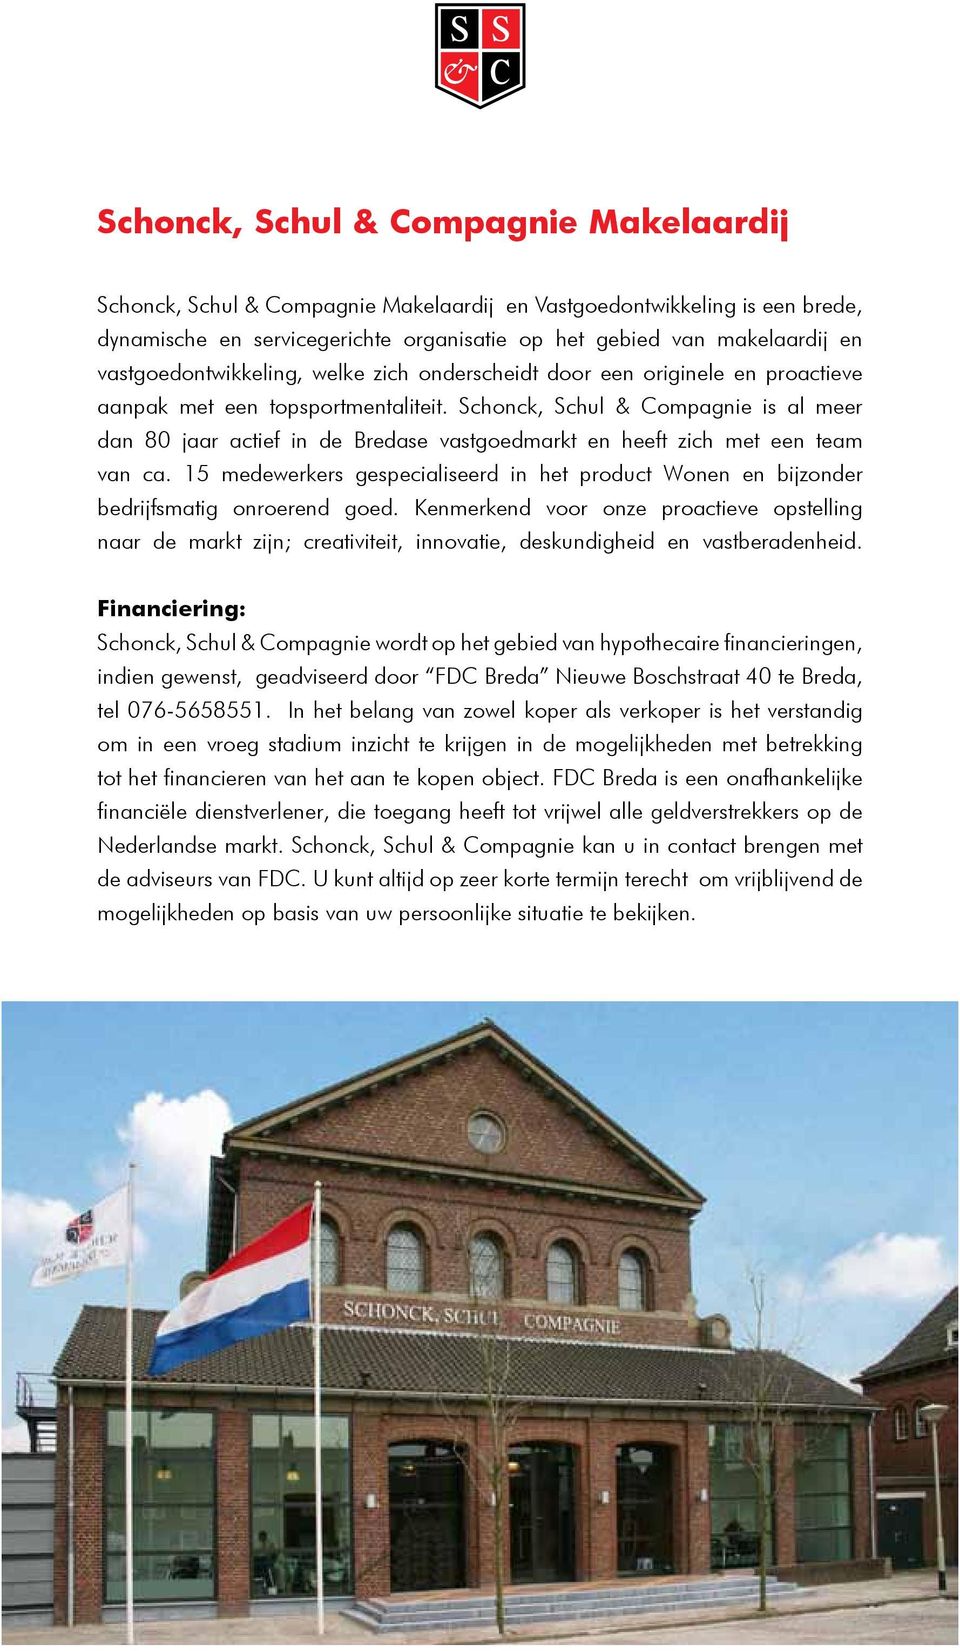 Schonck, Schul & Compagnie is al meer dan 80 jaar actief in de Bredase vastgoedmarkt en heeft zich met een team van ca.